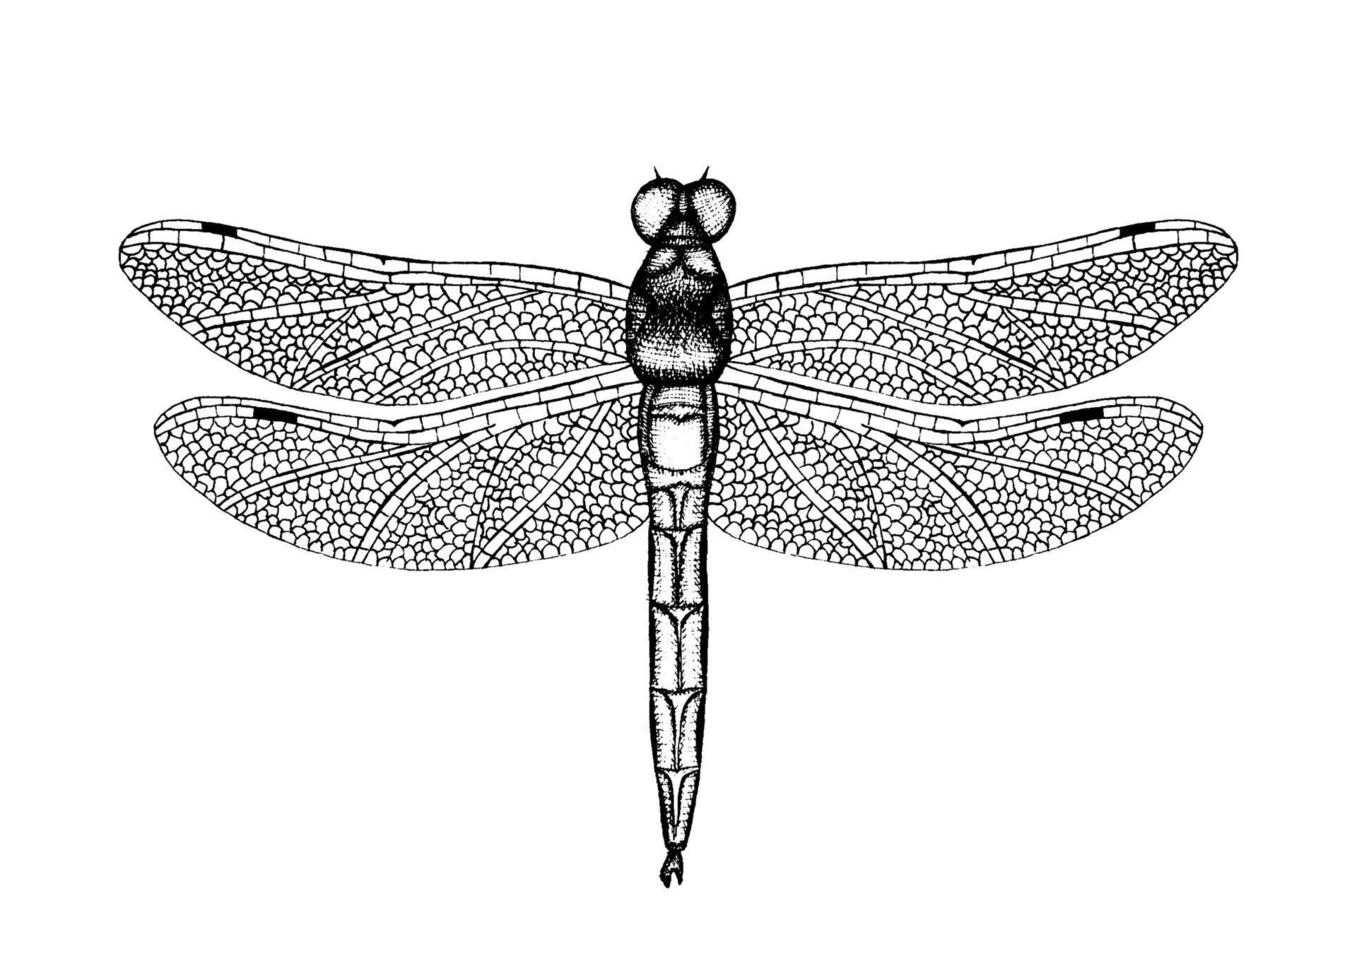 illustration vectorielle en noir et blanc d'une libellule. croquis d'insectes dessinés à la main. dessin graphique détaillé de demoiselle dans un style vintage. vecteur